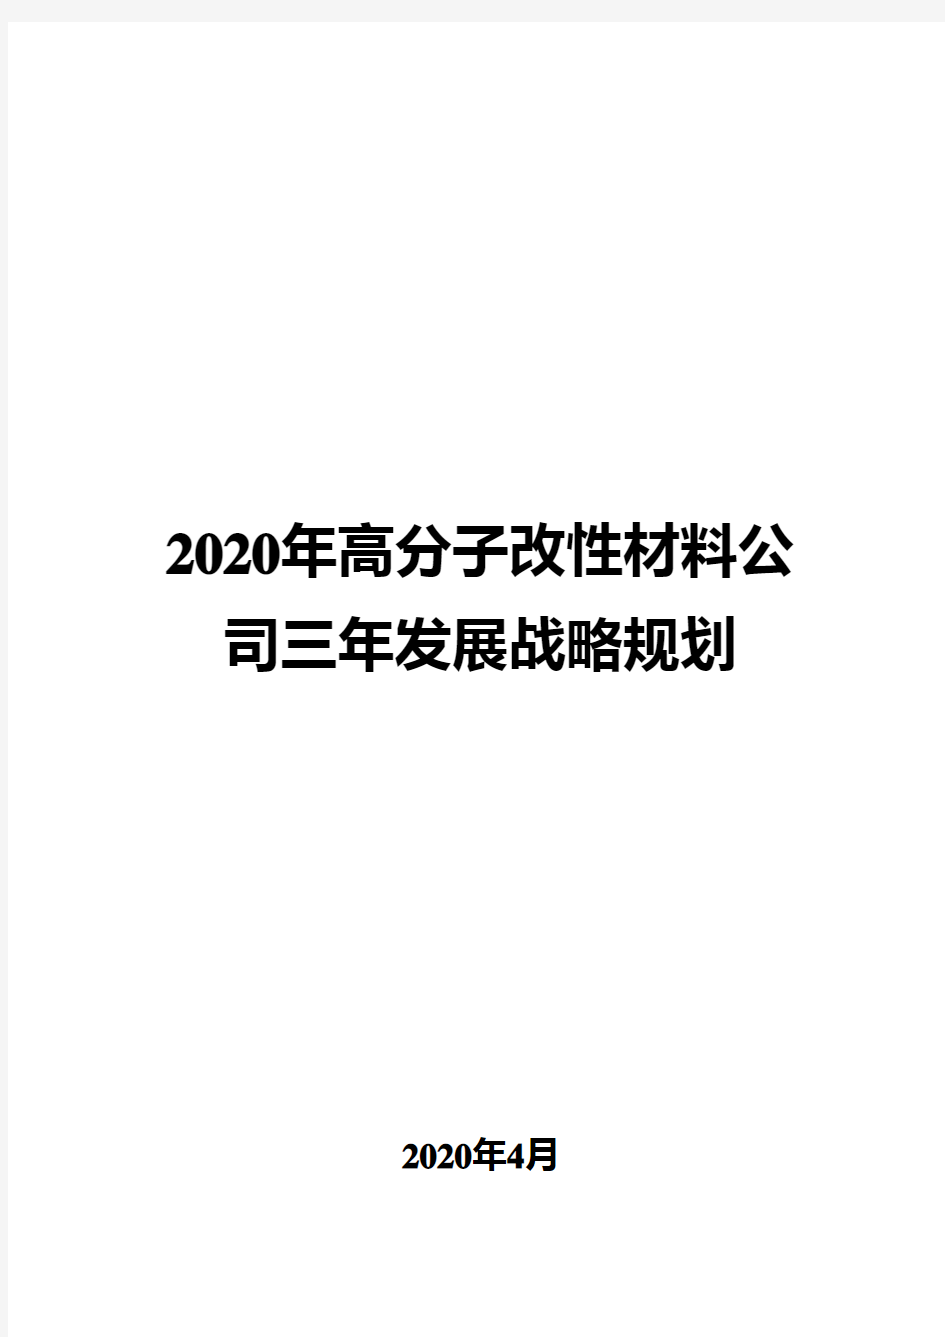 2020年高分子改性材料公司三年发展战略规划